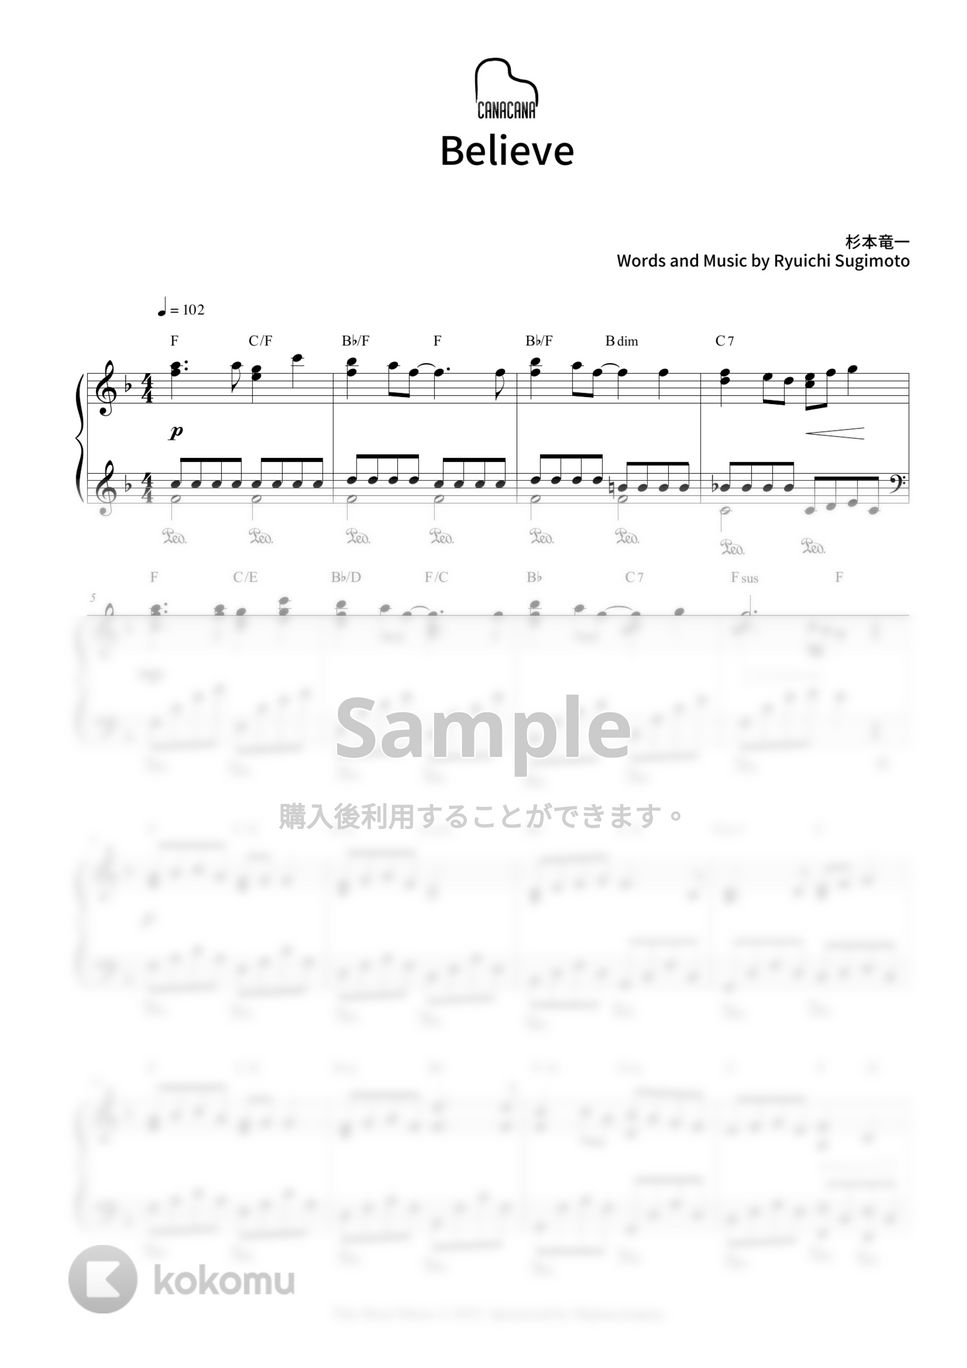 杉本 竜一 - Believe (卒業ソング) by CANACANA family